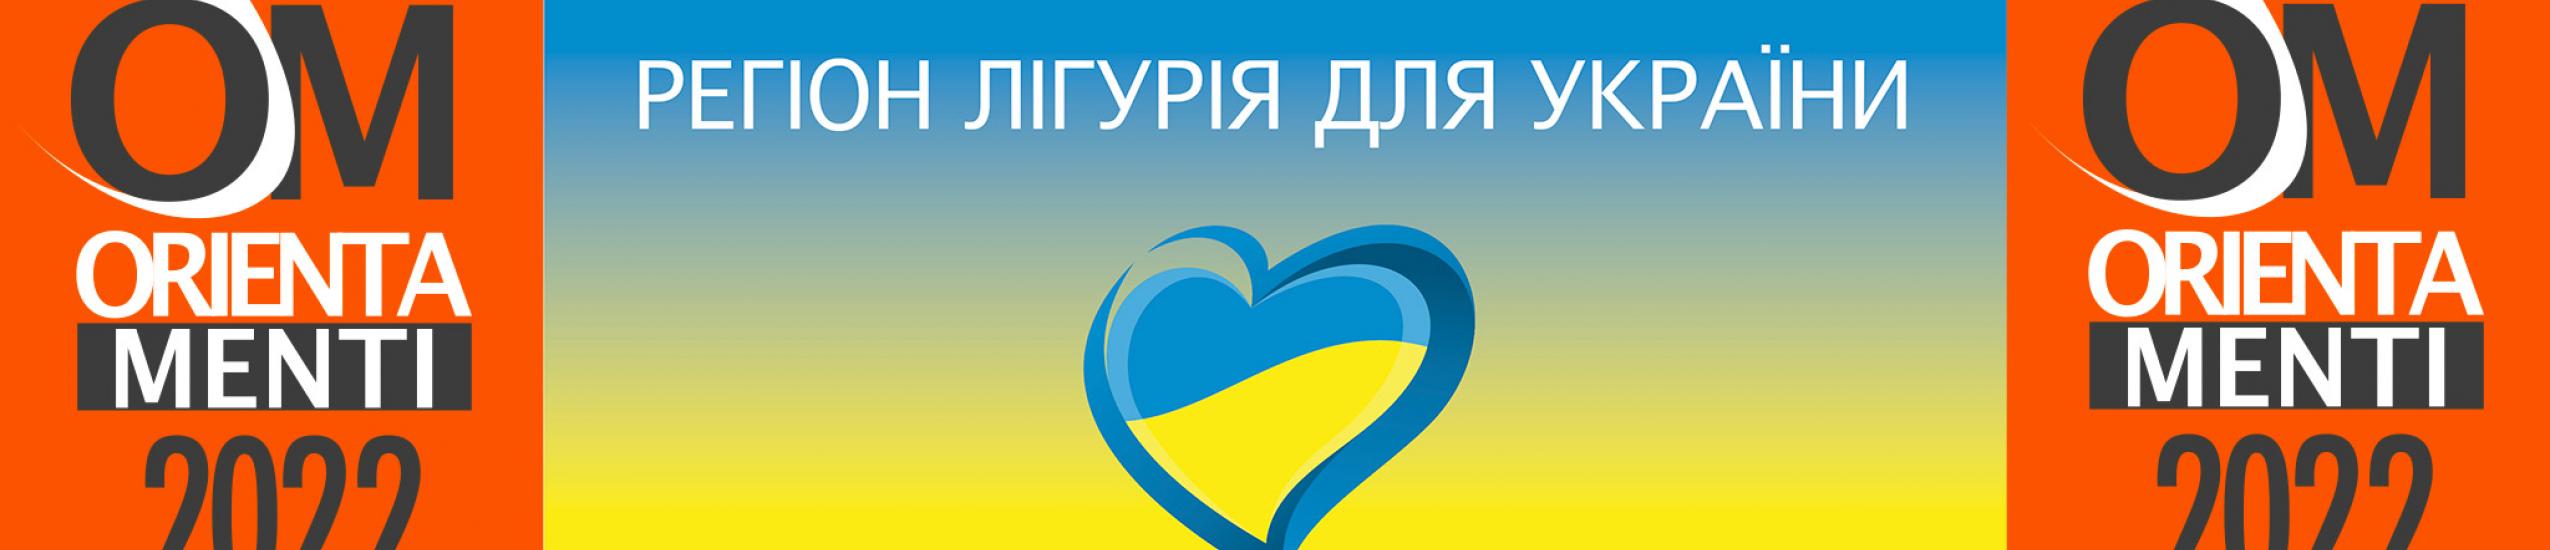 Il portale orientamenti in ucraino